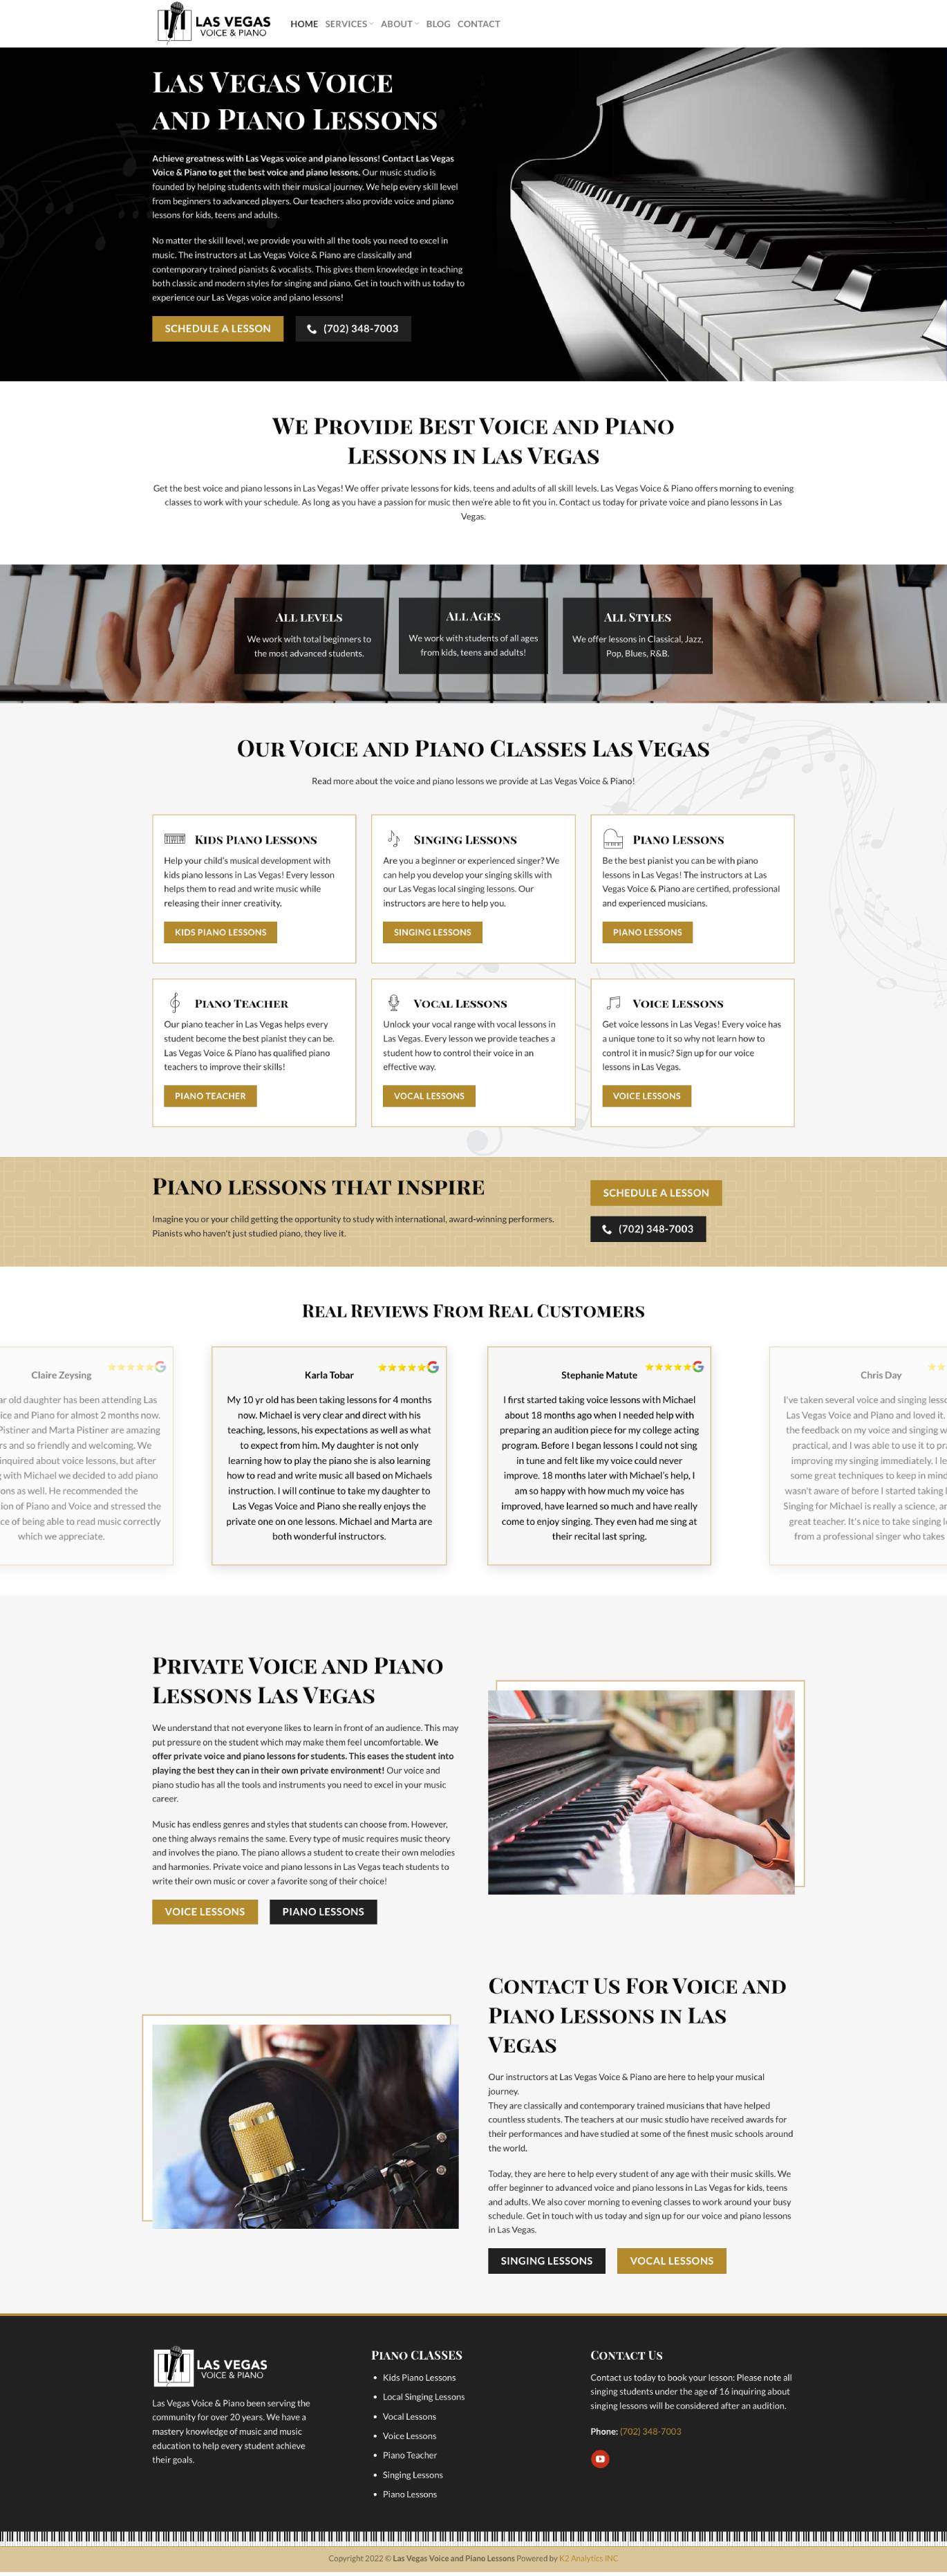 Voice & Piano Studio Web Design & SEO Services